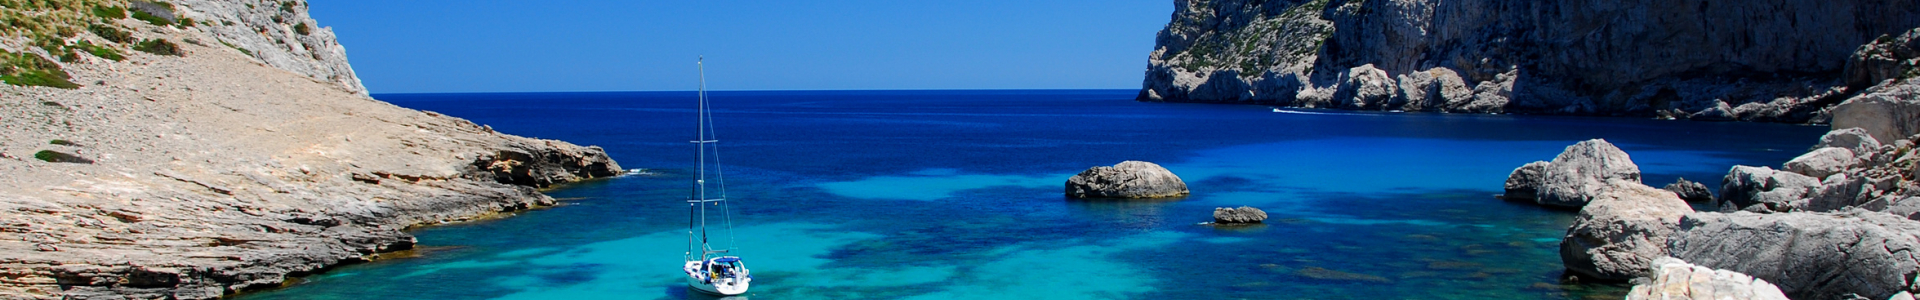 Opodo : séjours dans les îles Méditerranéennes, Baléares, Canaries...